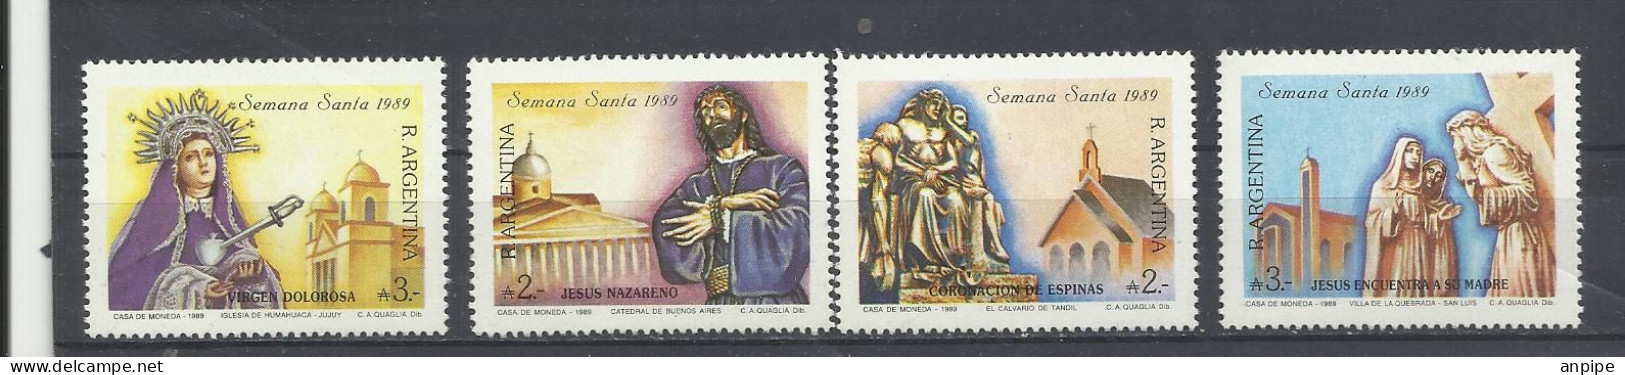 ARGENTINA 1989 - Unused Stamps